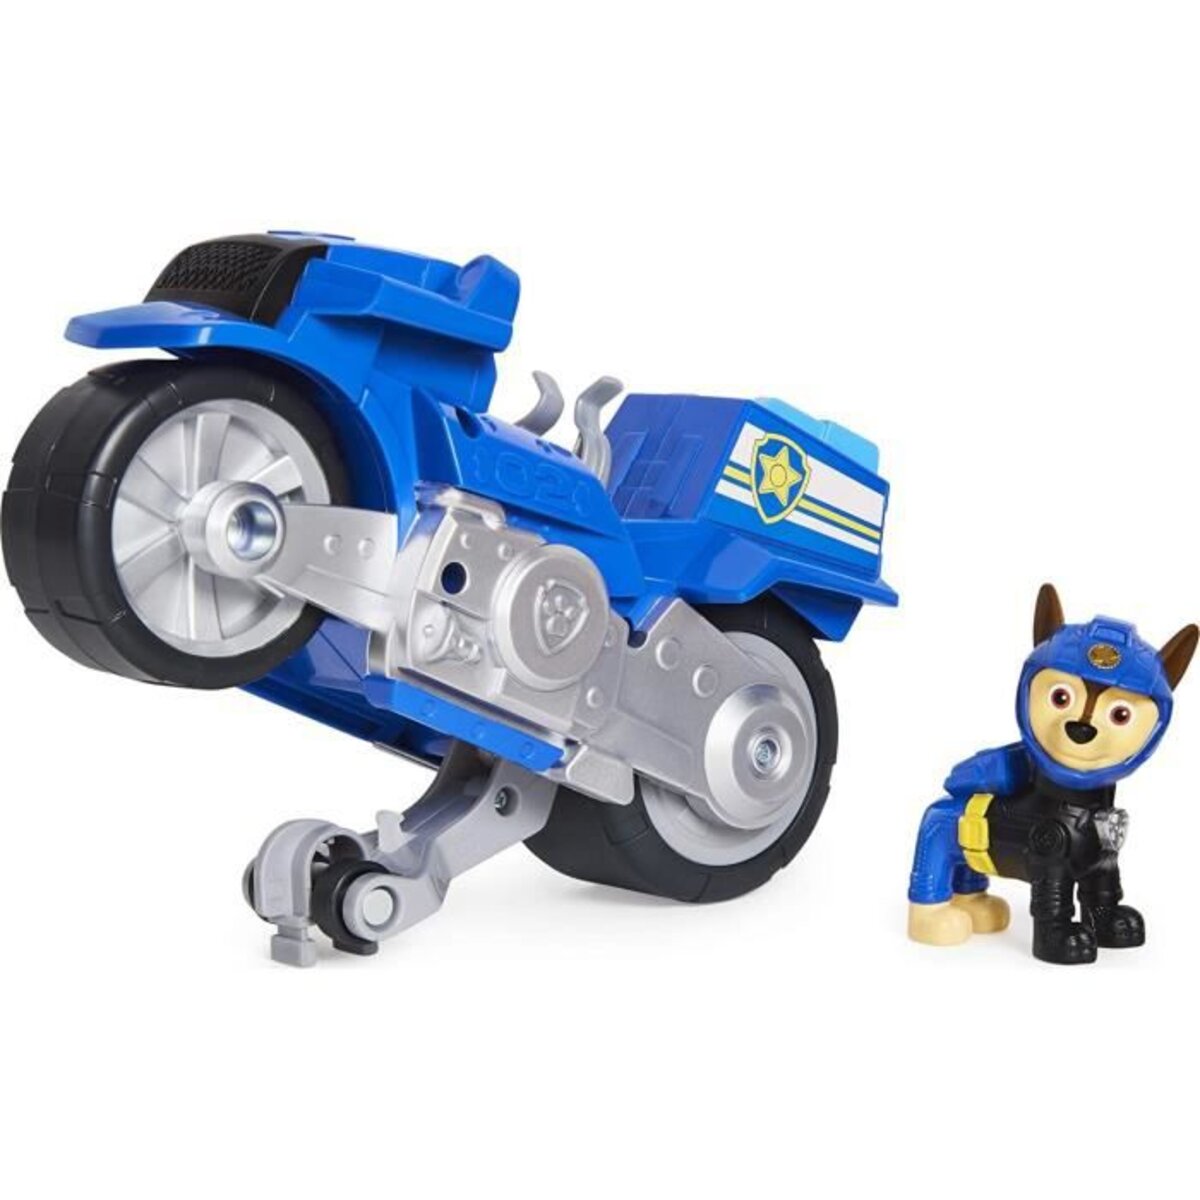 Pat patrouille - vehicule + figurine amovible rocky moto pups paw patrol -  moto rétrofriction - 6060545 - jouet enfant 3 ans et + - La Poste